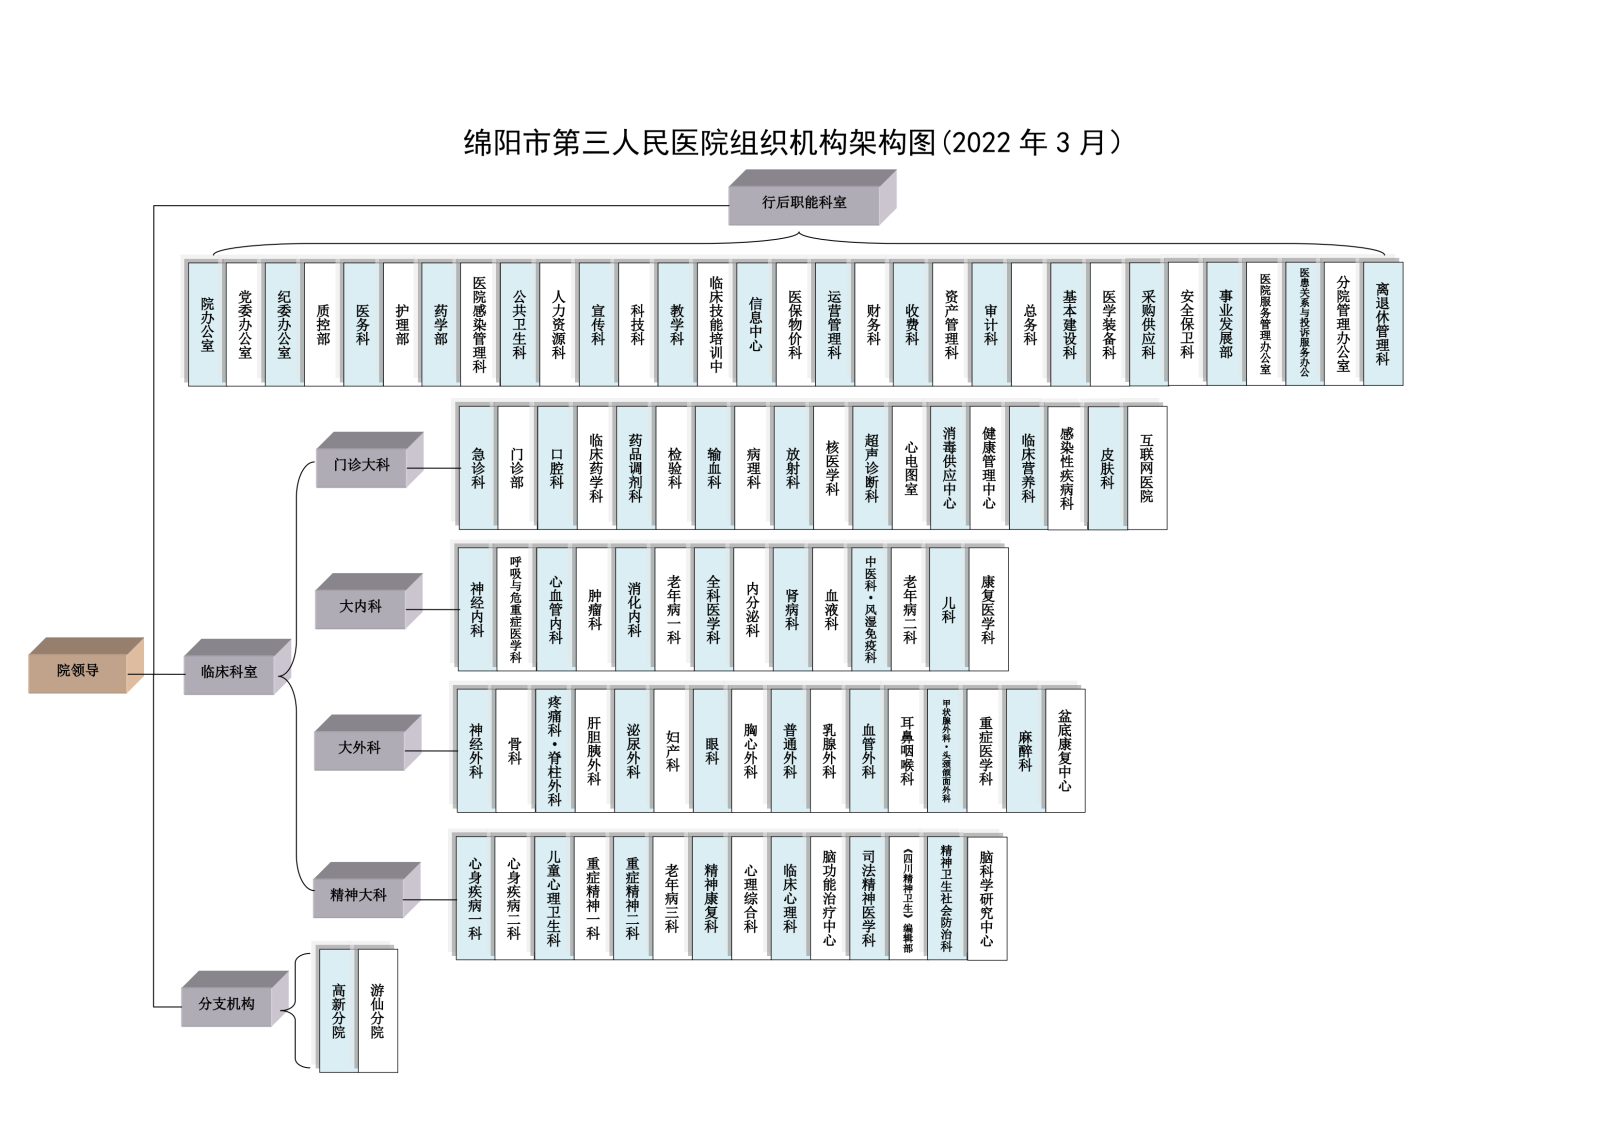 组织机构架构图（彩图2022年3月)_00.png